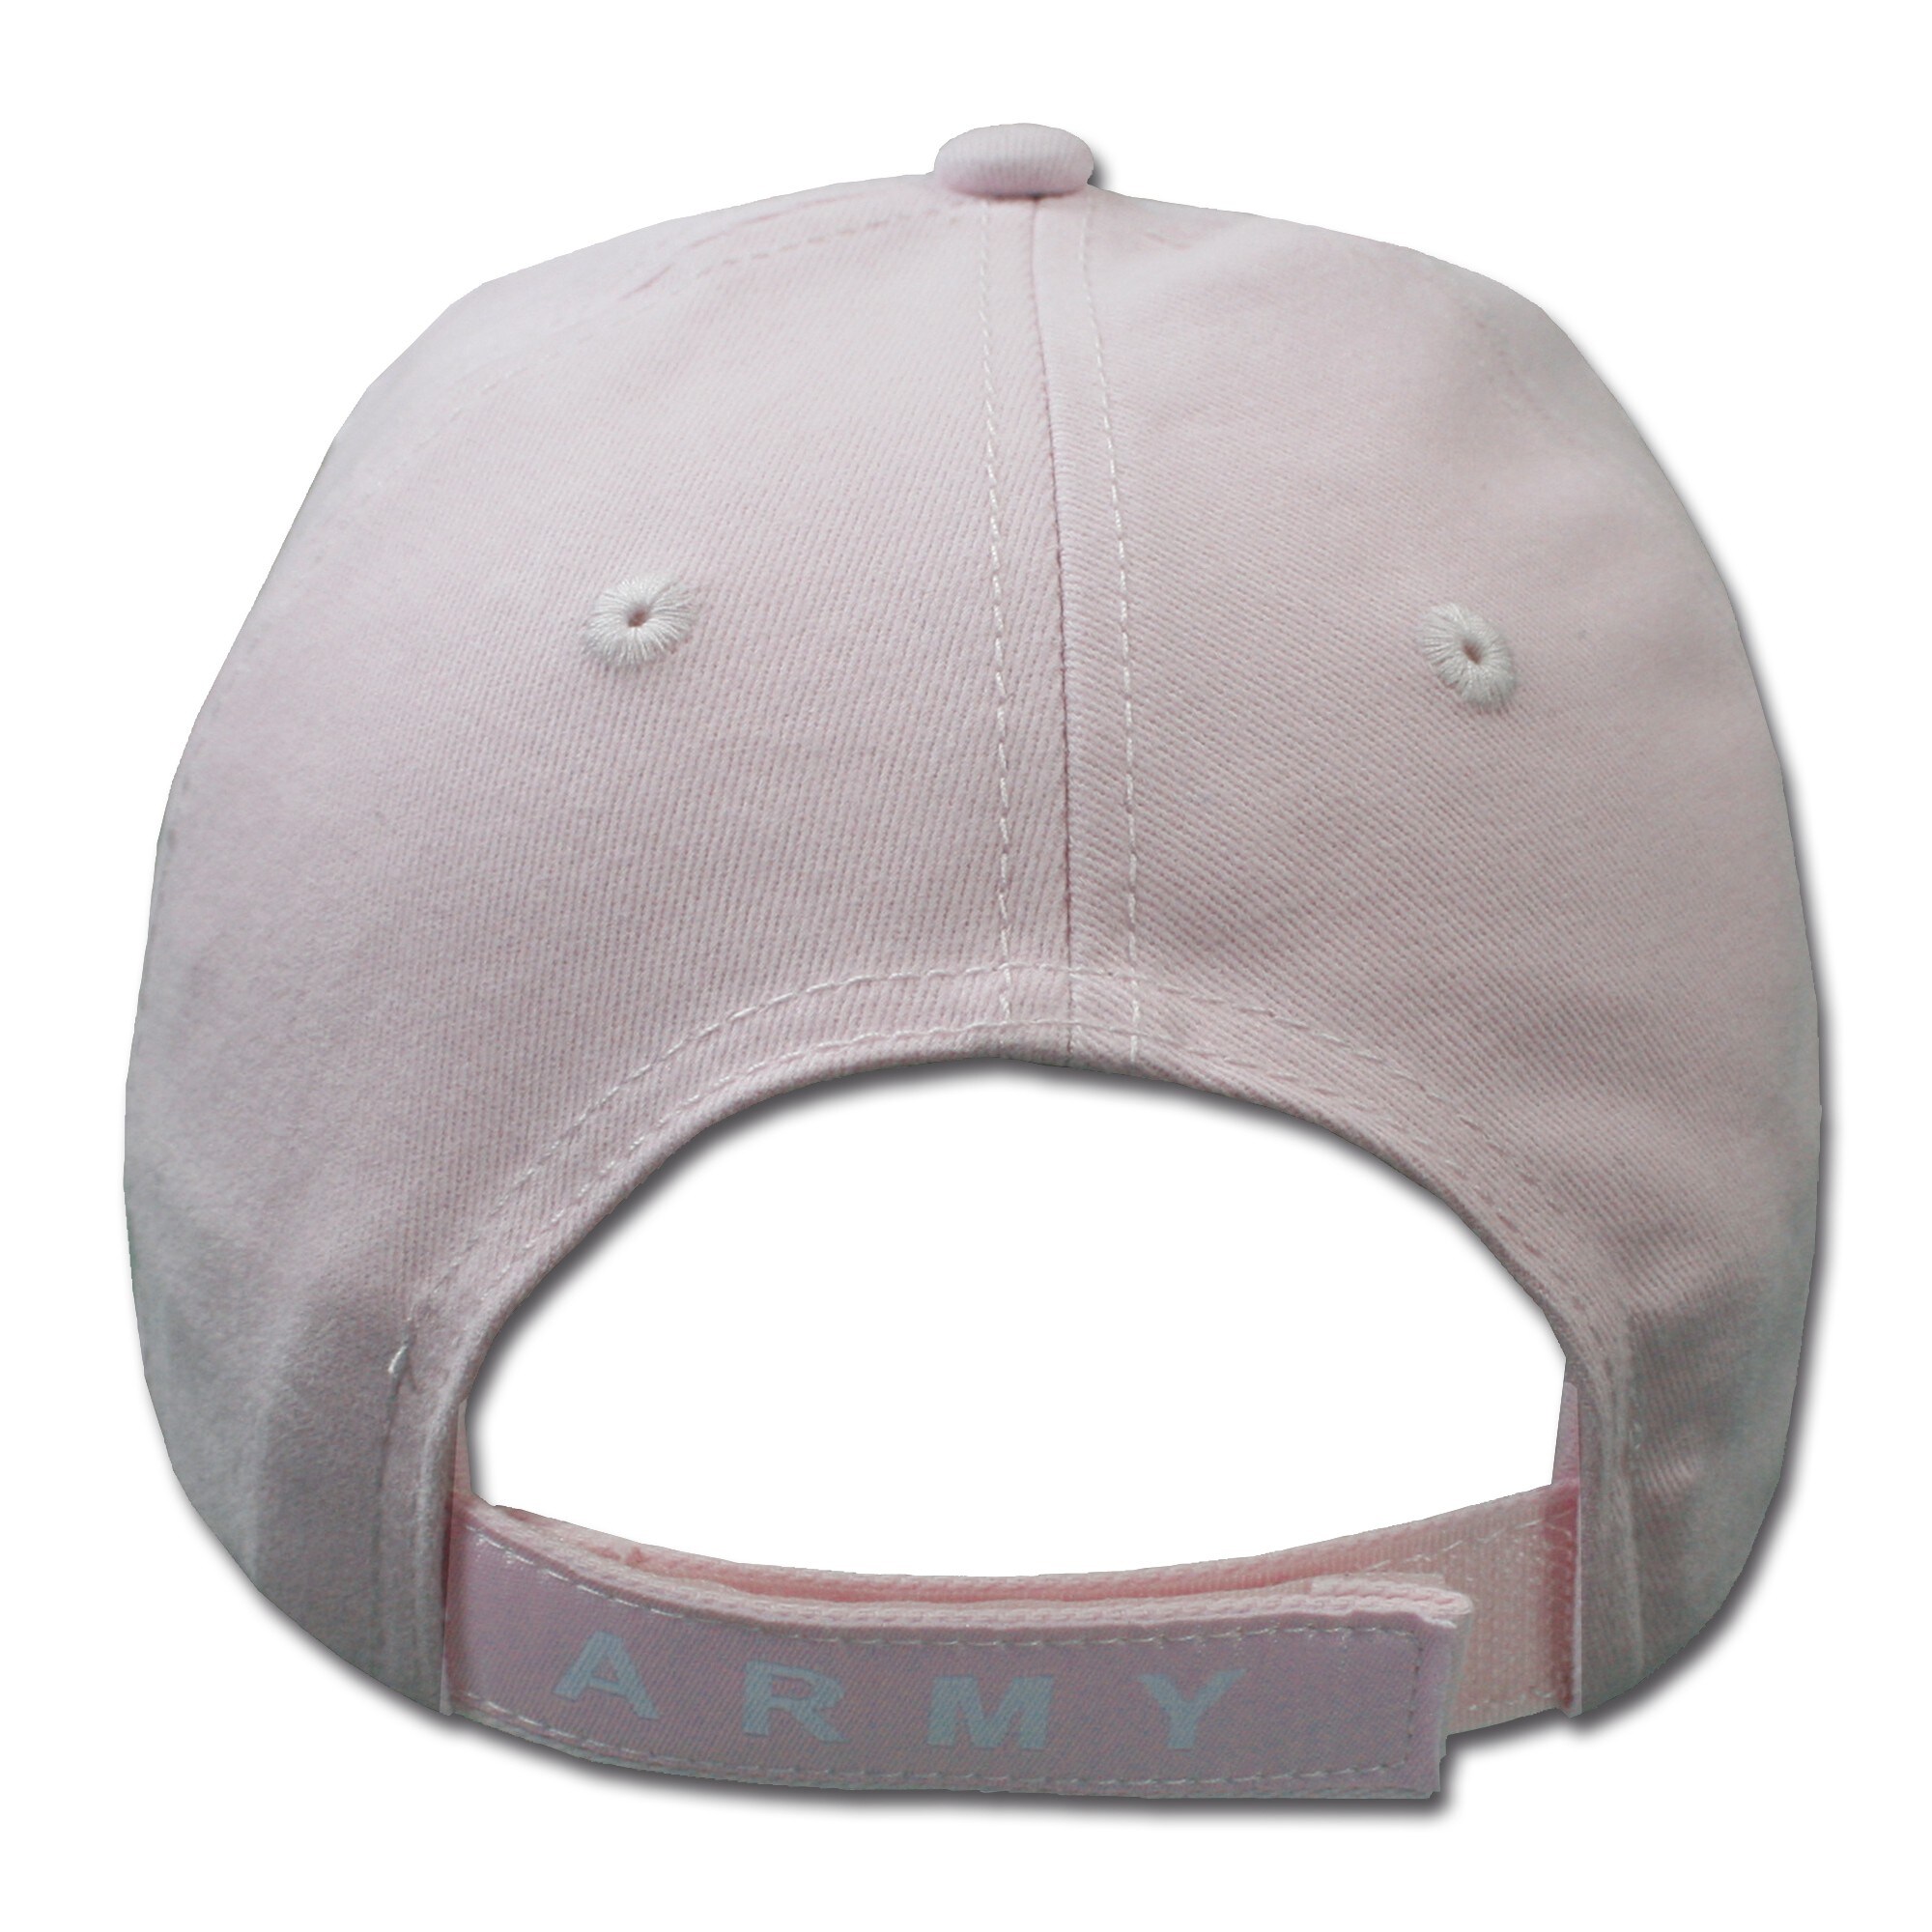 Baseball Cap ARMY pink | Baseball Cap ARMY pink | Baseball Caps | Hats ...